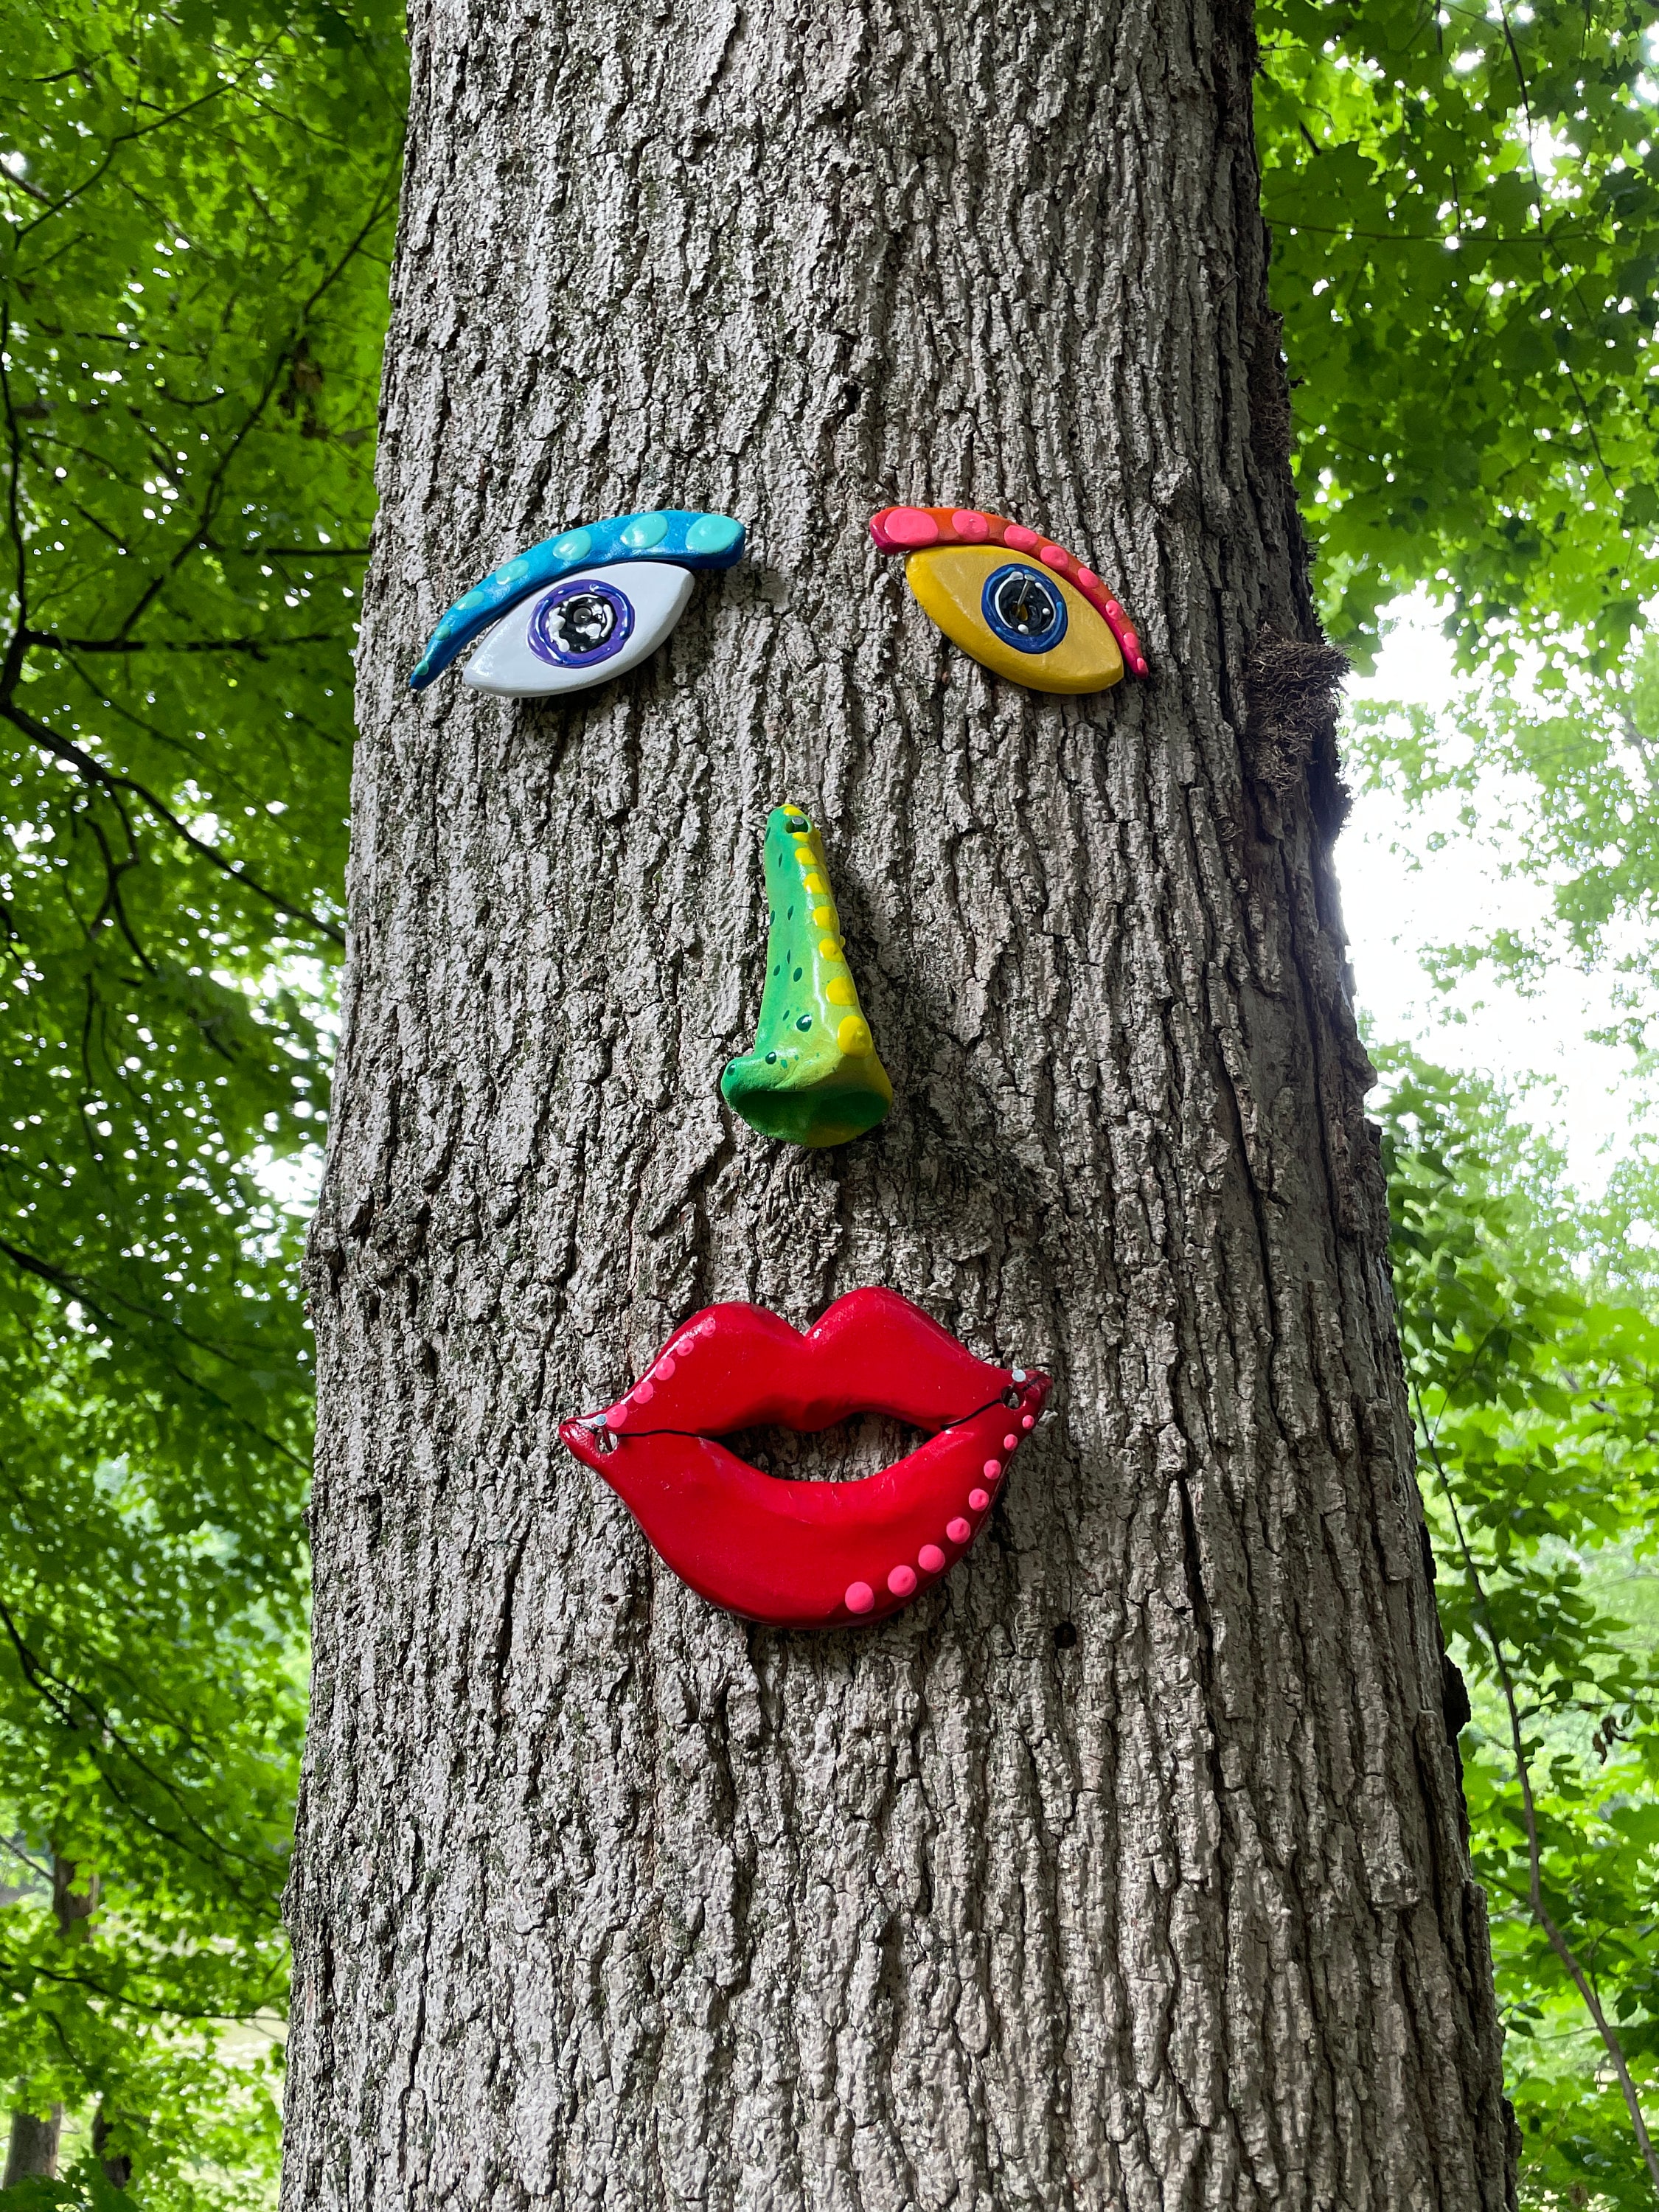 Smiley Forest - A compter du 01 juin les visages d'arbre sont visibles  sur gardenelife.com rubrique idées déco ainsi que de nombreux autres  produits pour embellir notre jardin. bonne visite😍  ➡